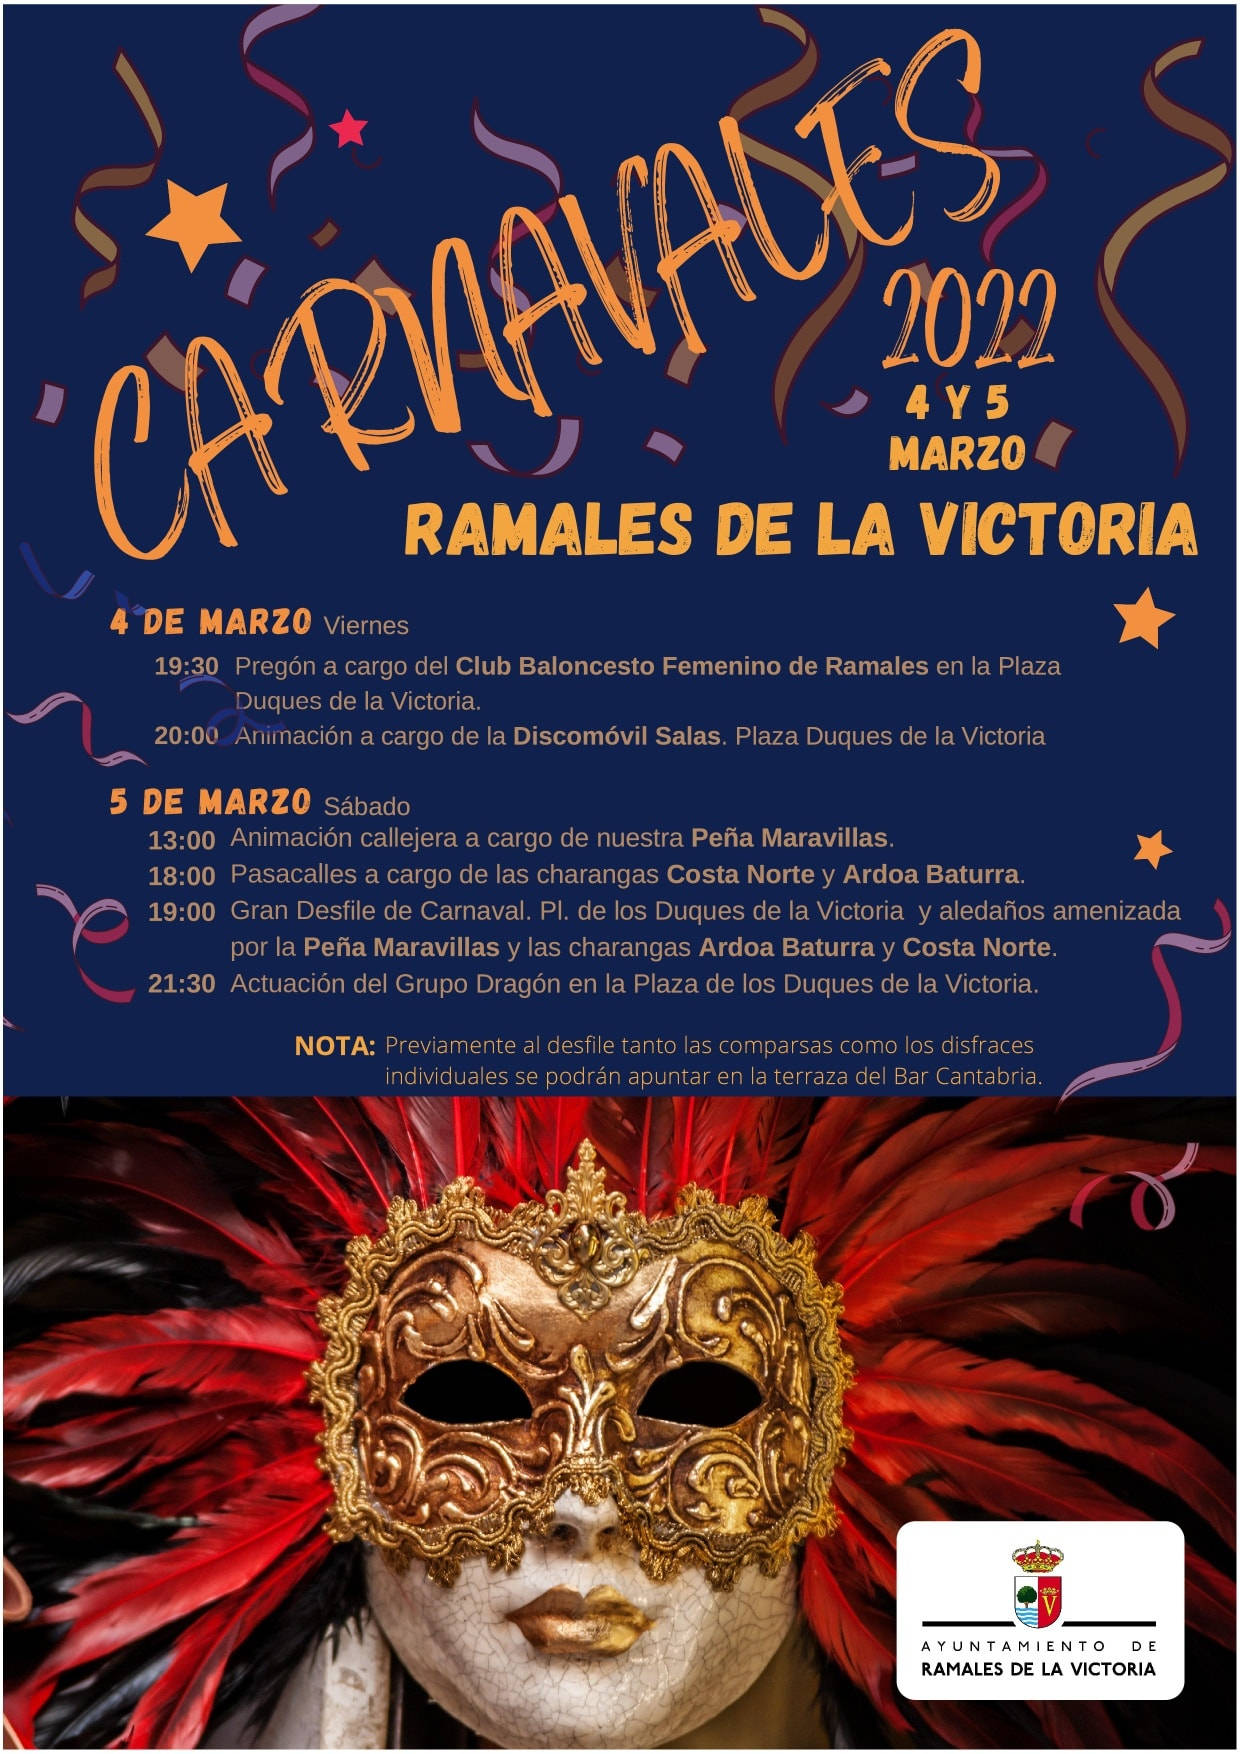 Carnavales Ramales de la Victoria 2022